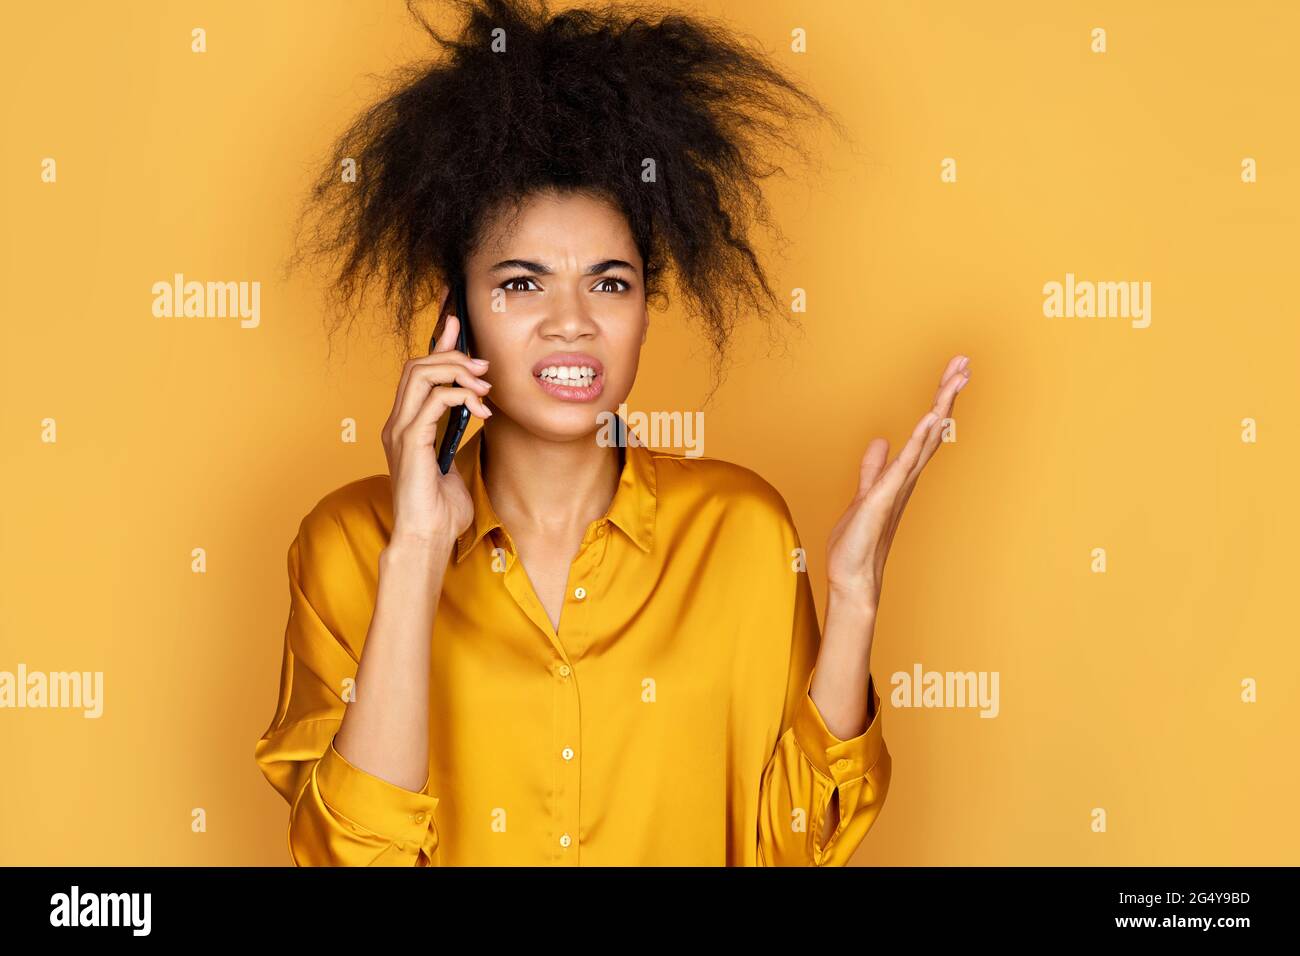 Wütend Mädchen reden auf Smartphone streiten oder Problem zu lösen. Foto von afroamerikanischen Mädchen auf gelbem Hintergrund Stockfoto